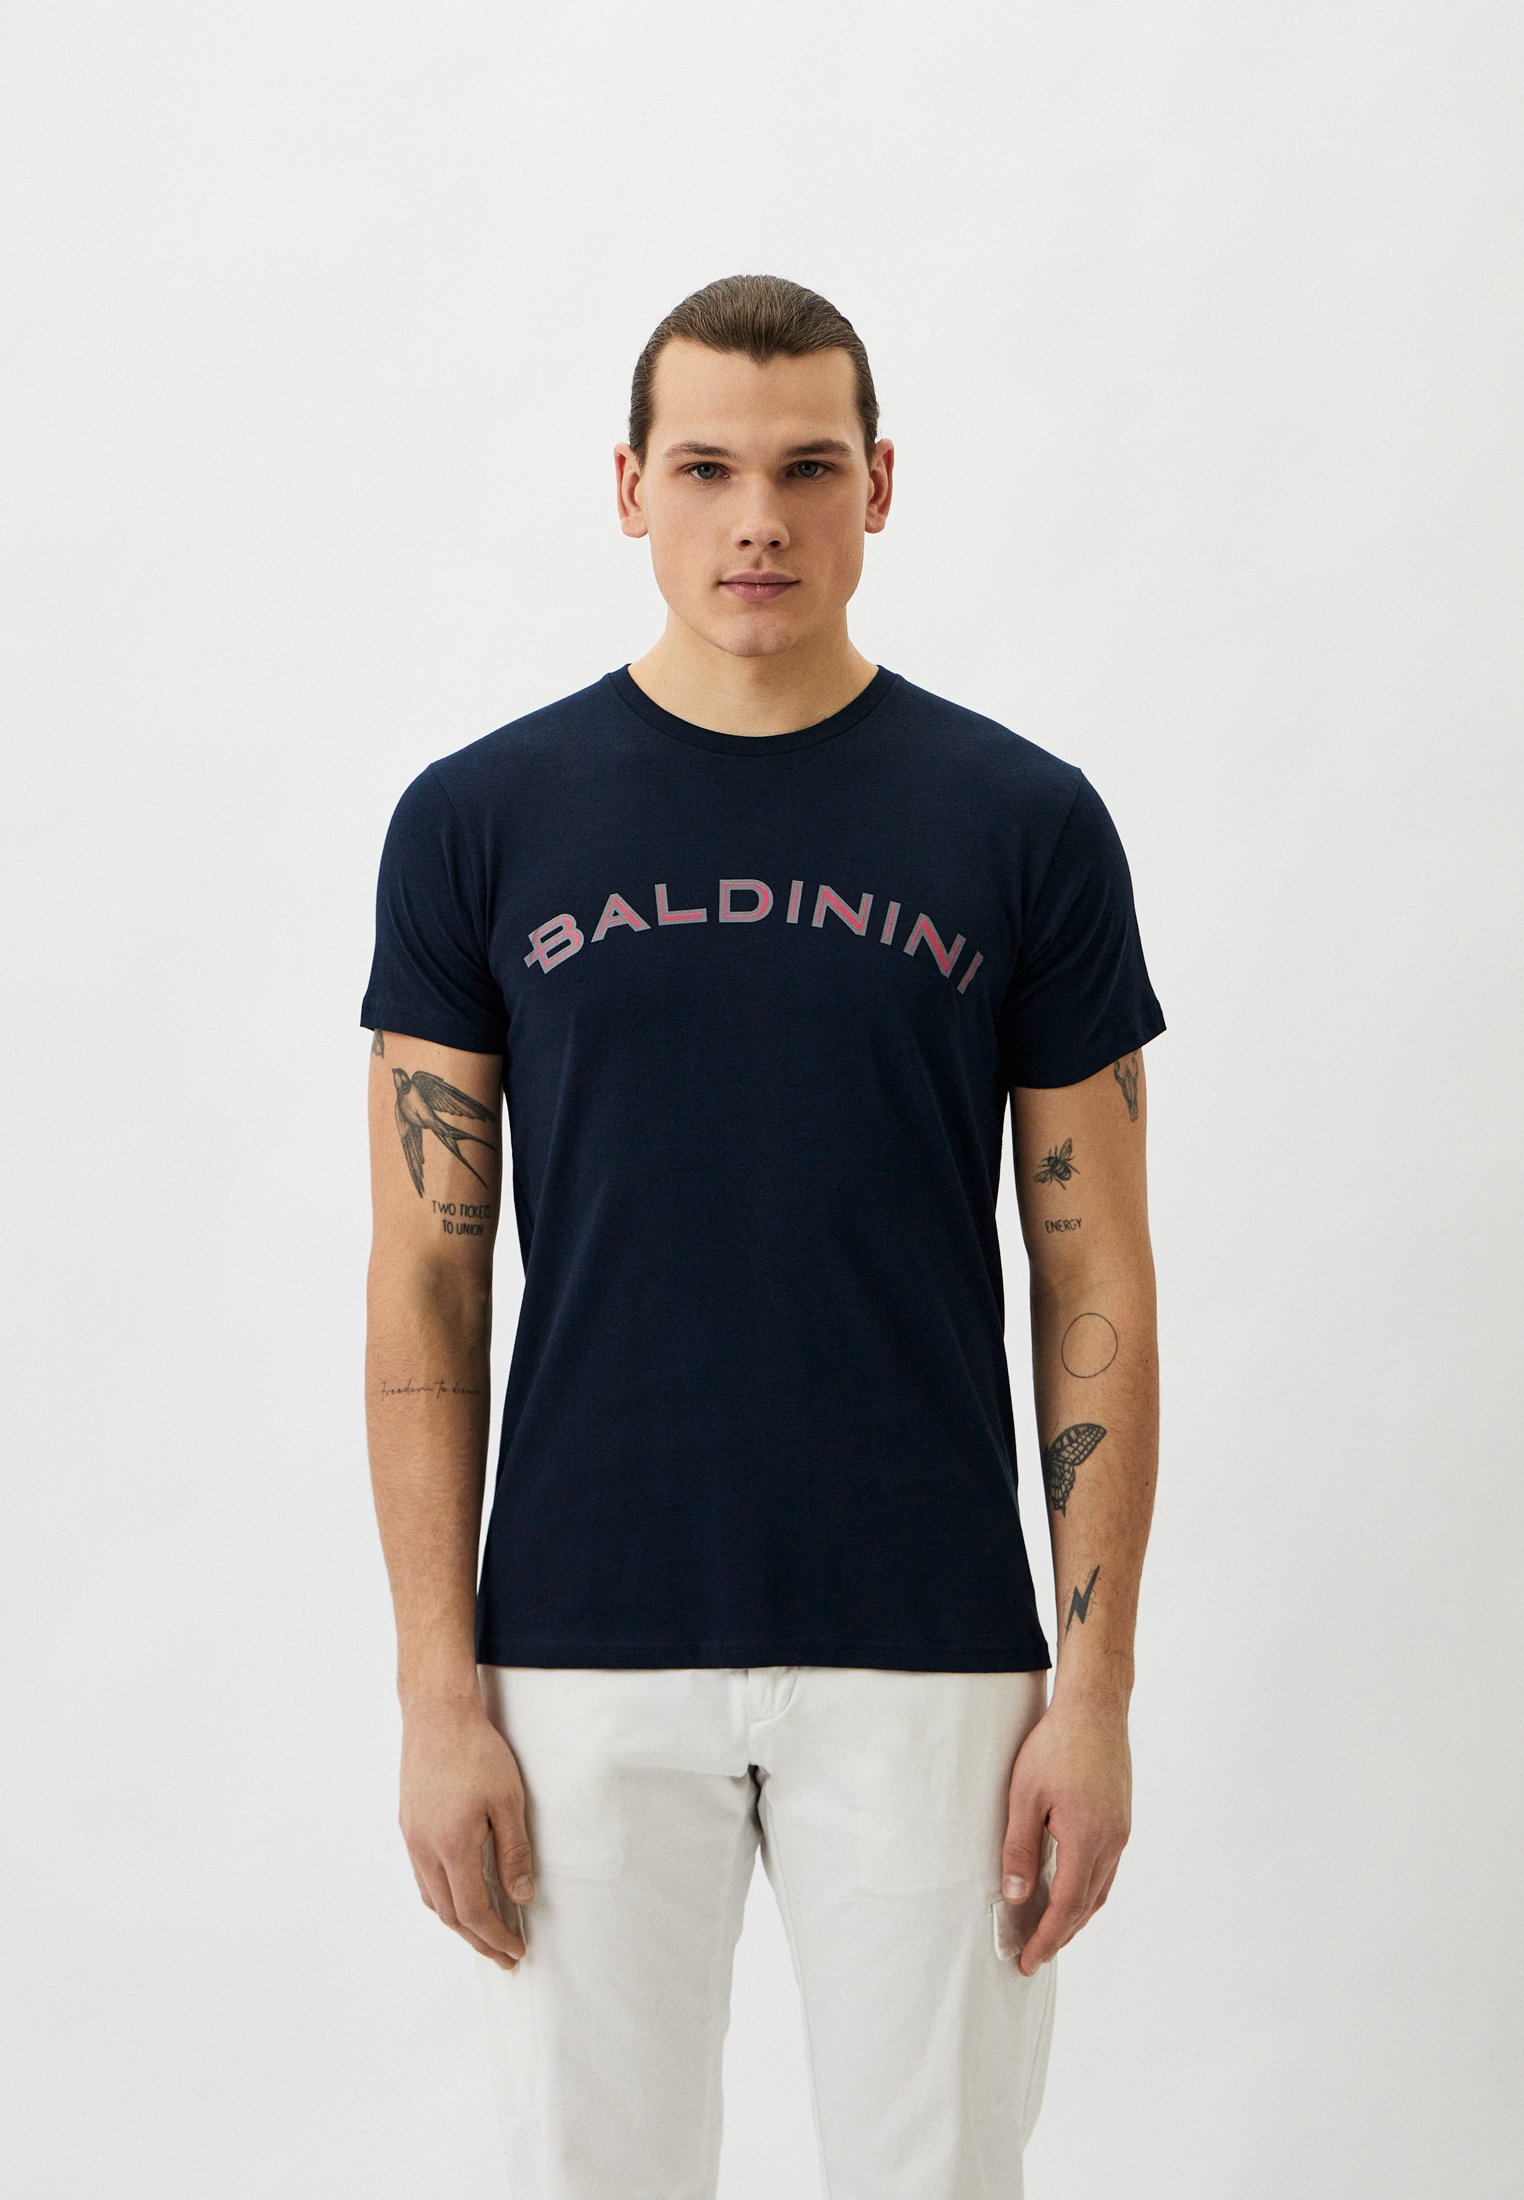 Мужская футболка Baldinini (Балдинини) B-OLM-M001: изображение 1